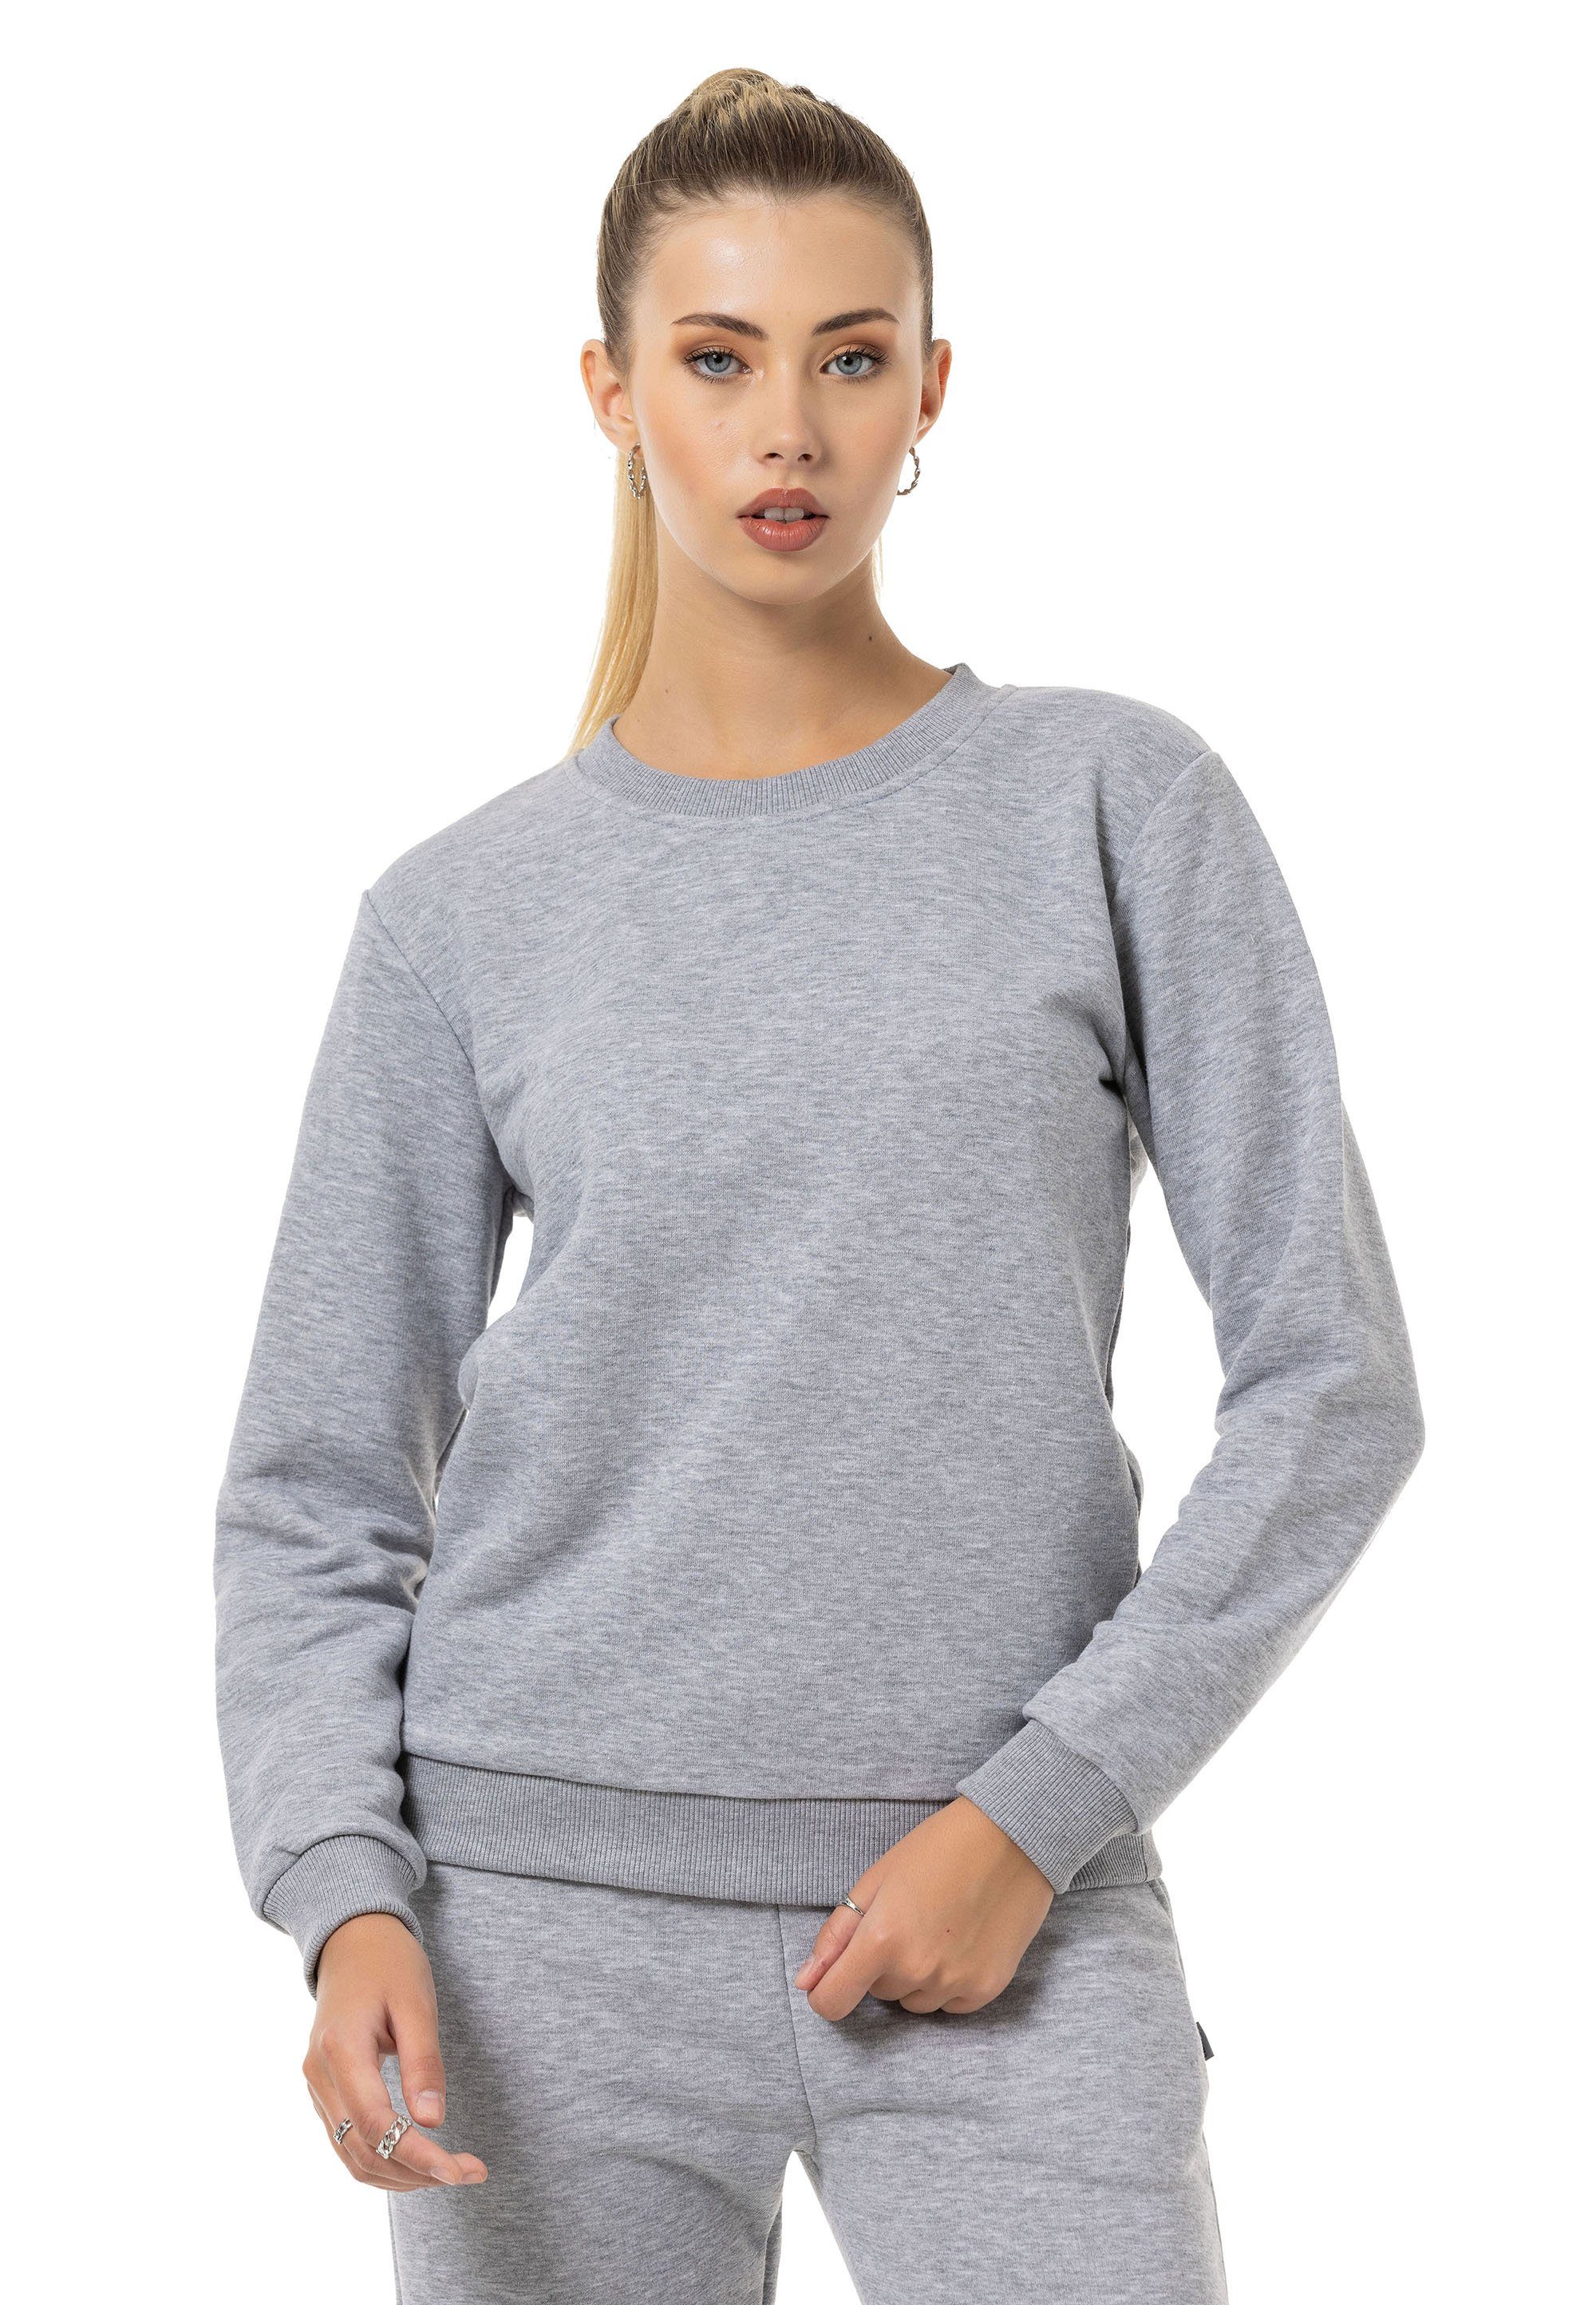 RedBridge Sweatshirt Rundhals Pullover Premium Qualität Grau-Melange